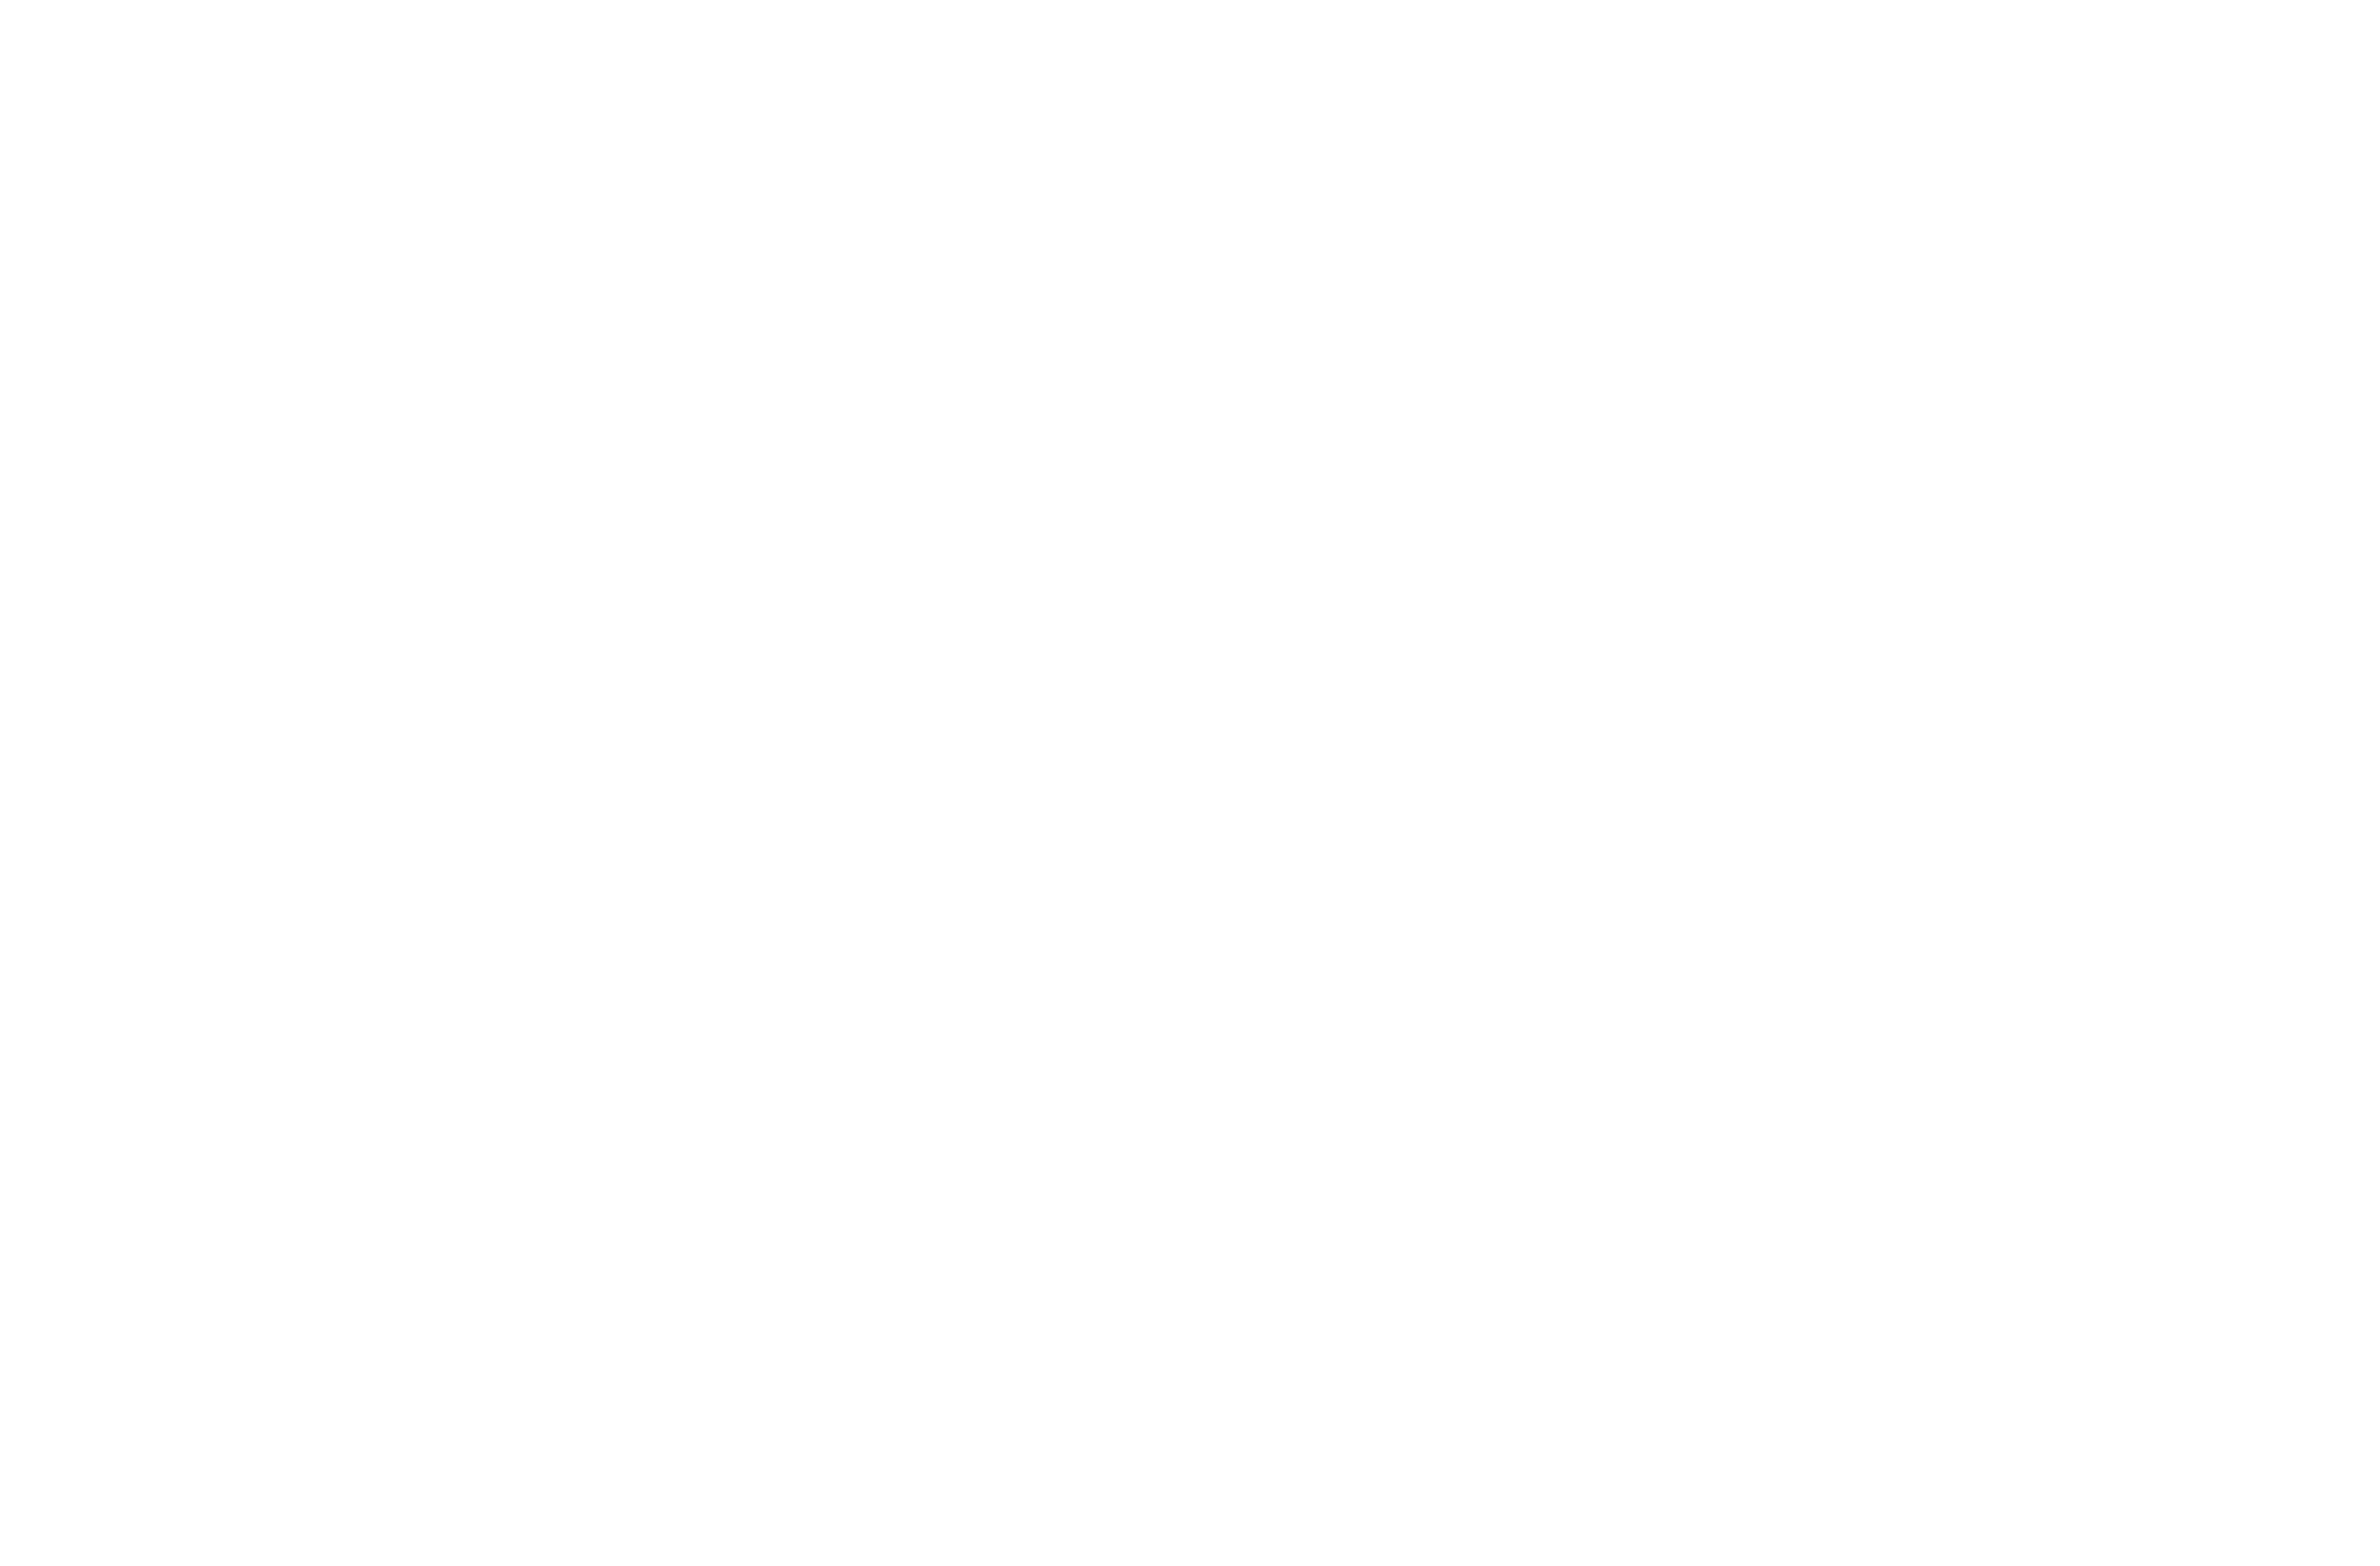 Jager I&T logo vertical white on black